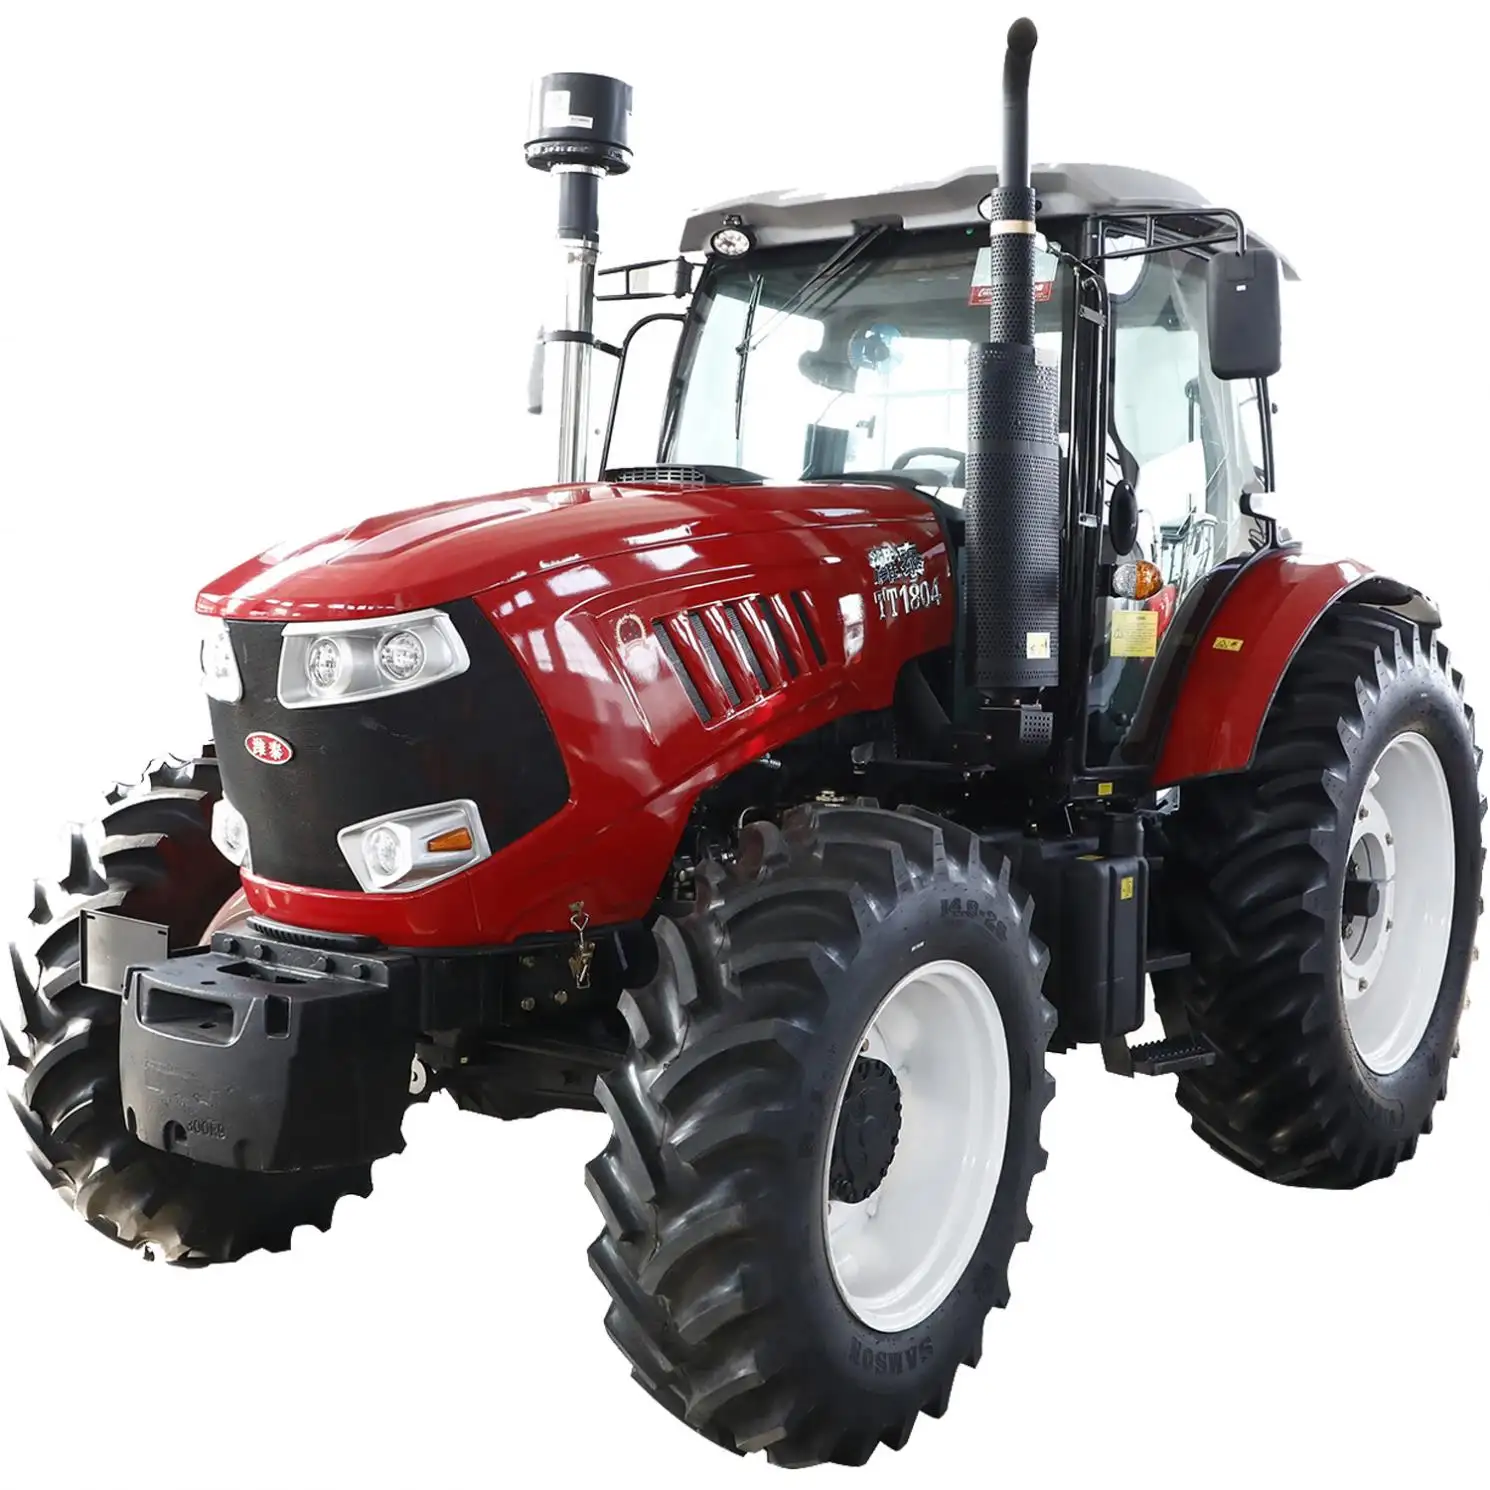 Traktor roda pertanian tangan bekas/kedua, massey ferguson mf1004 100hp 4x4wd dengan peralatan pertanian kompak mini kecil